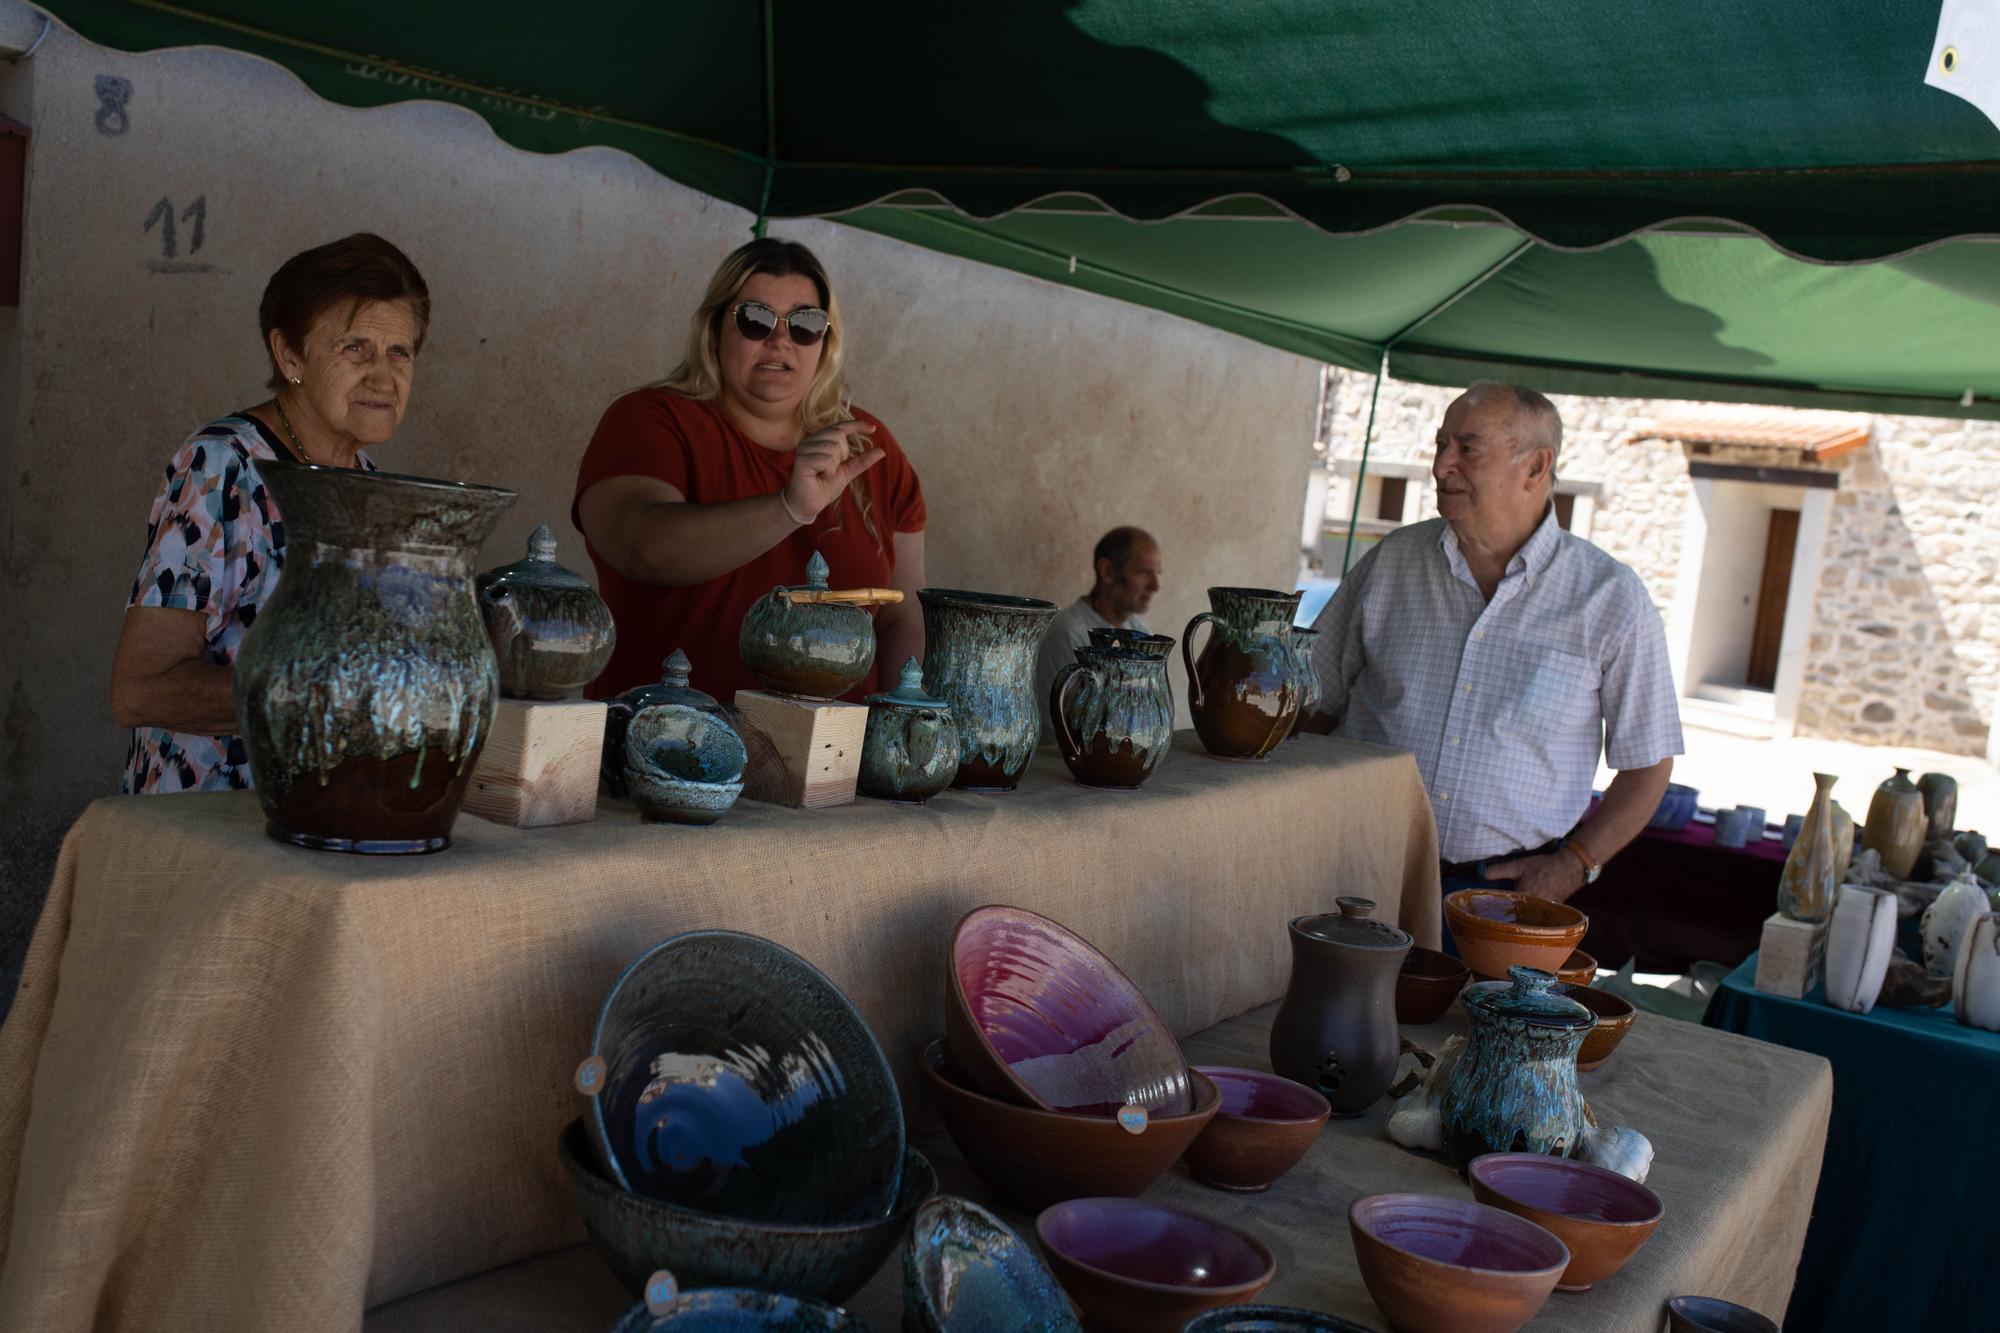 GALERÍA | Disfruta de la Feria Tradicional de Alfarería de Pereruela "Alfareruela"